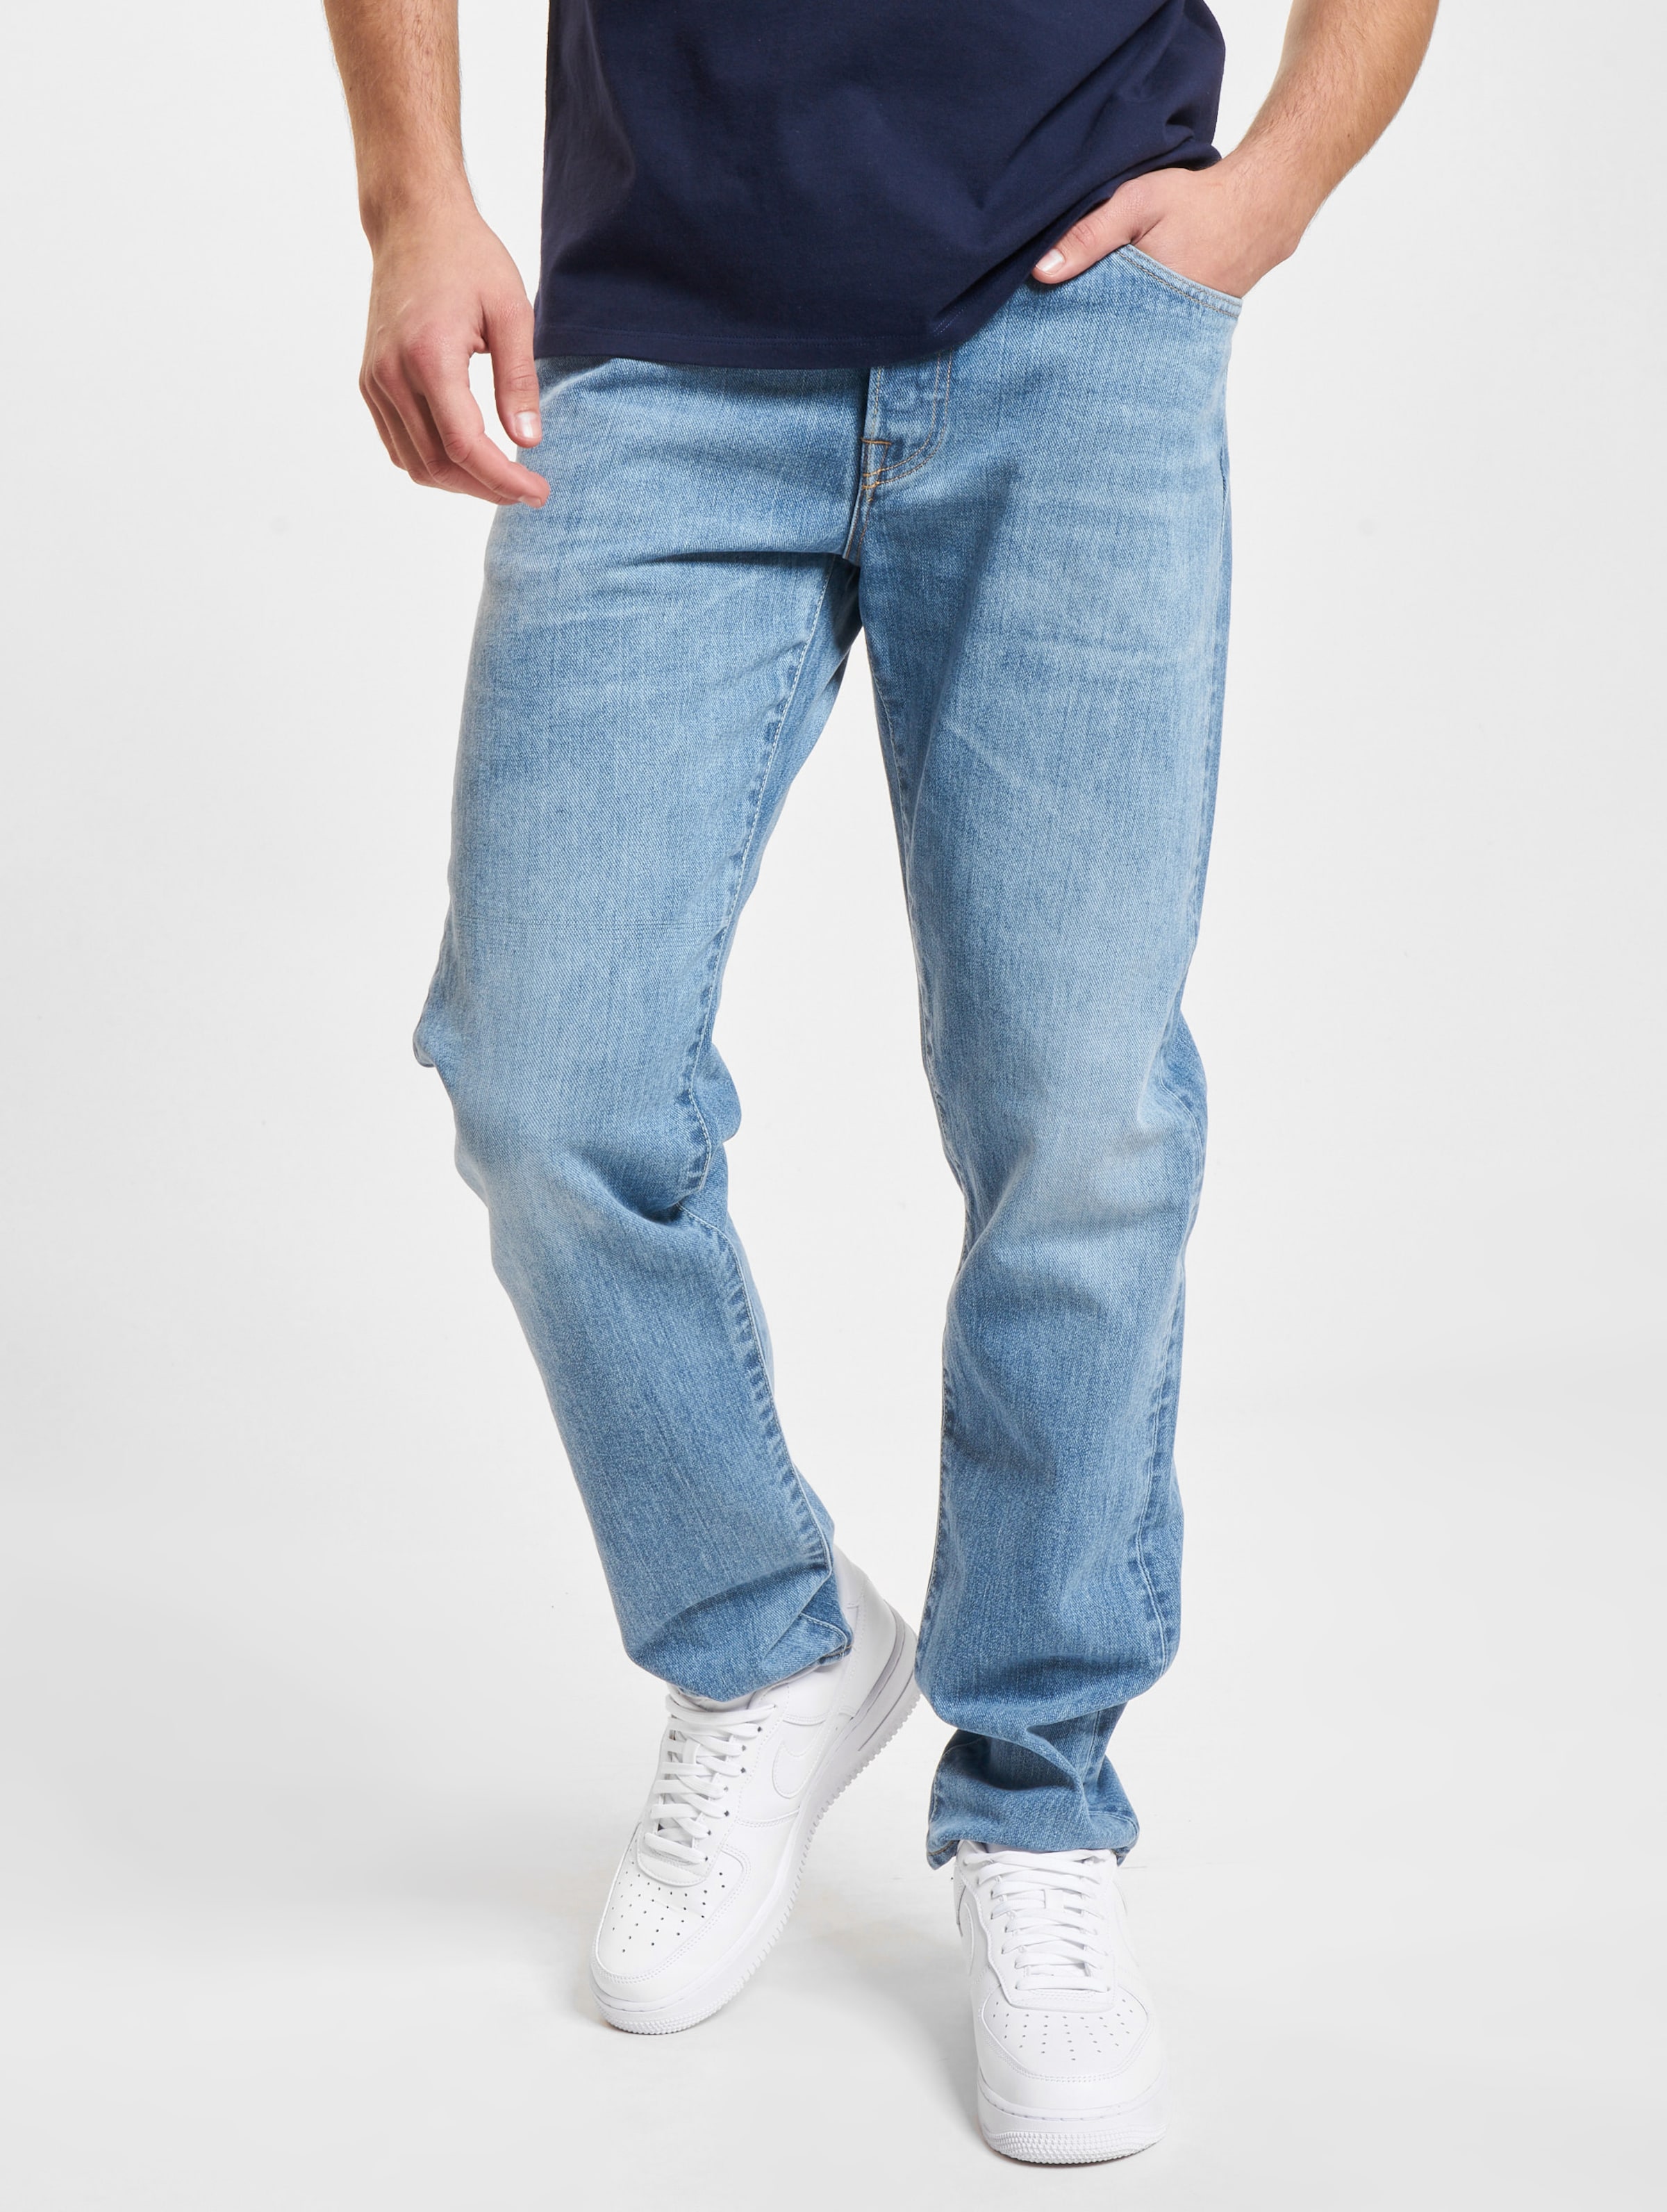 Edwin Regular Jeans Männer,Unisex op kleur blauw, Maat 3030